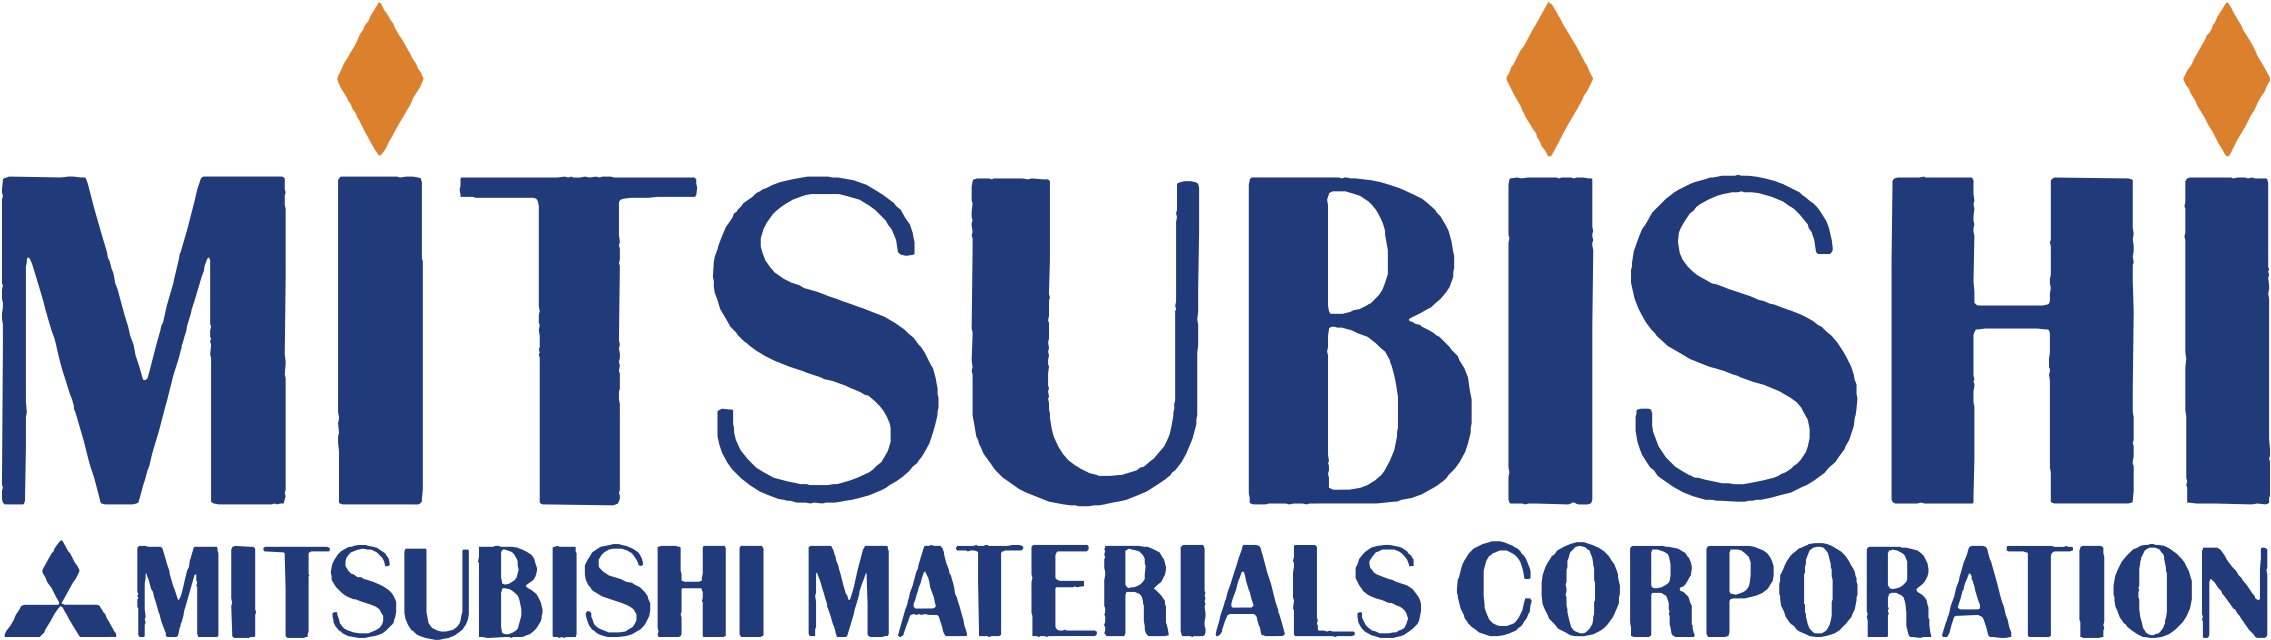 Mitsubishi Materials Logo Png Transparent - Mitsubishi Materials (2400x2400), Png Download